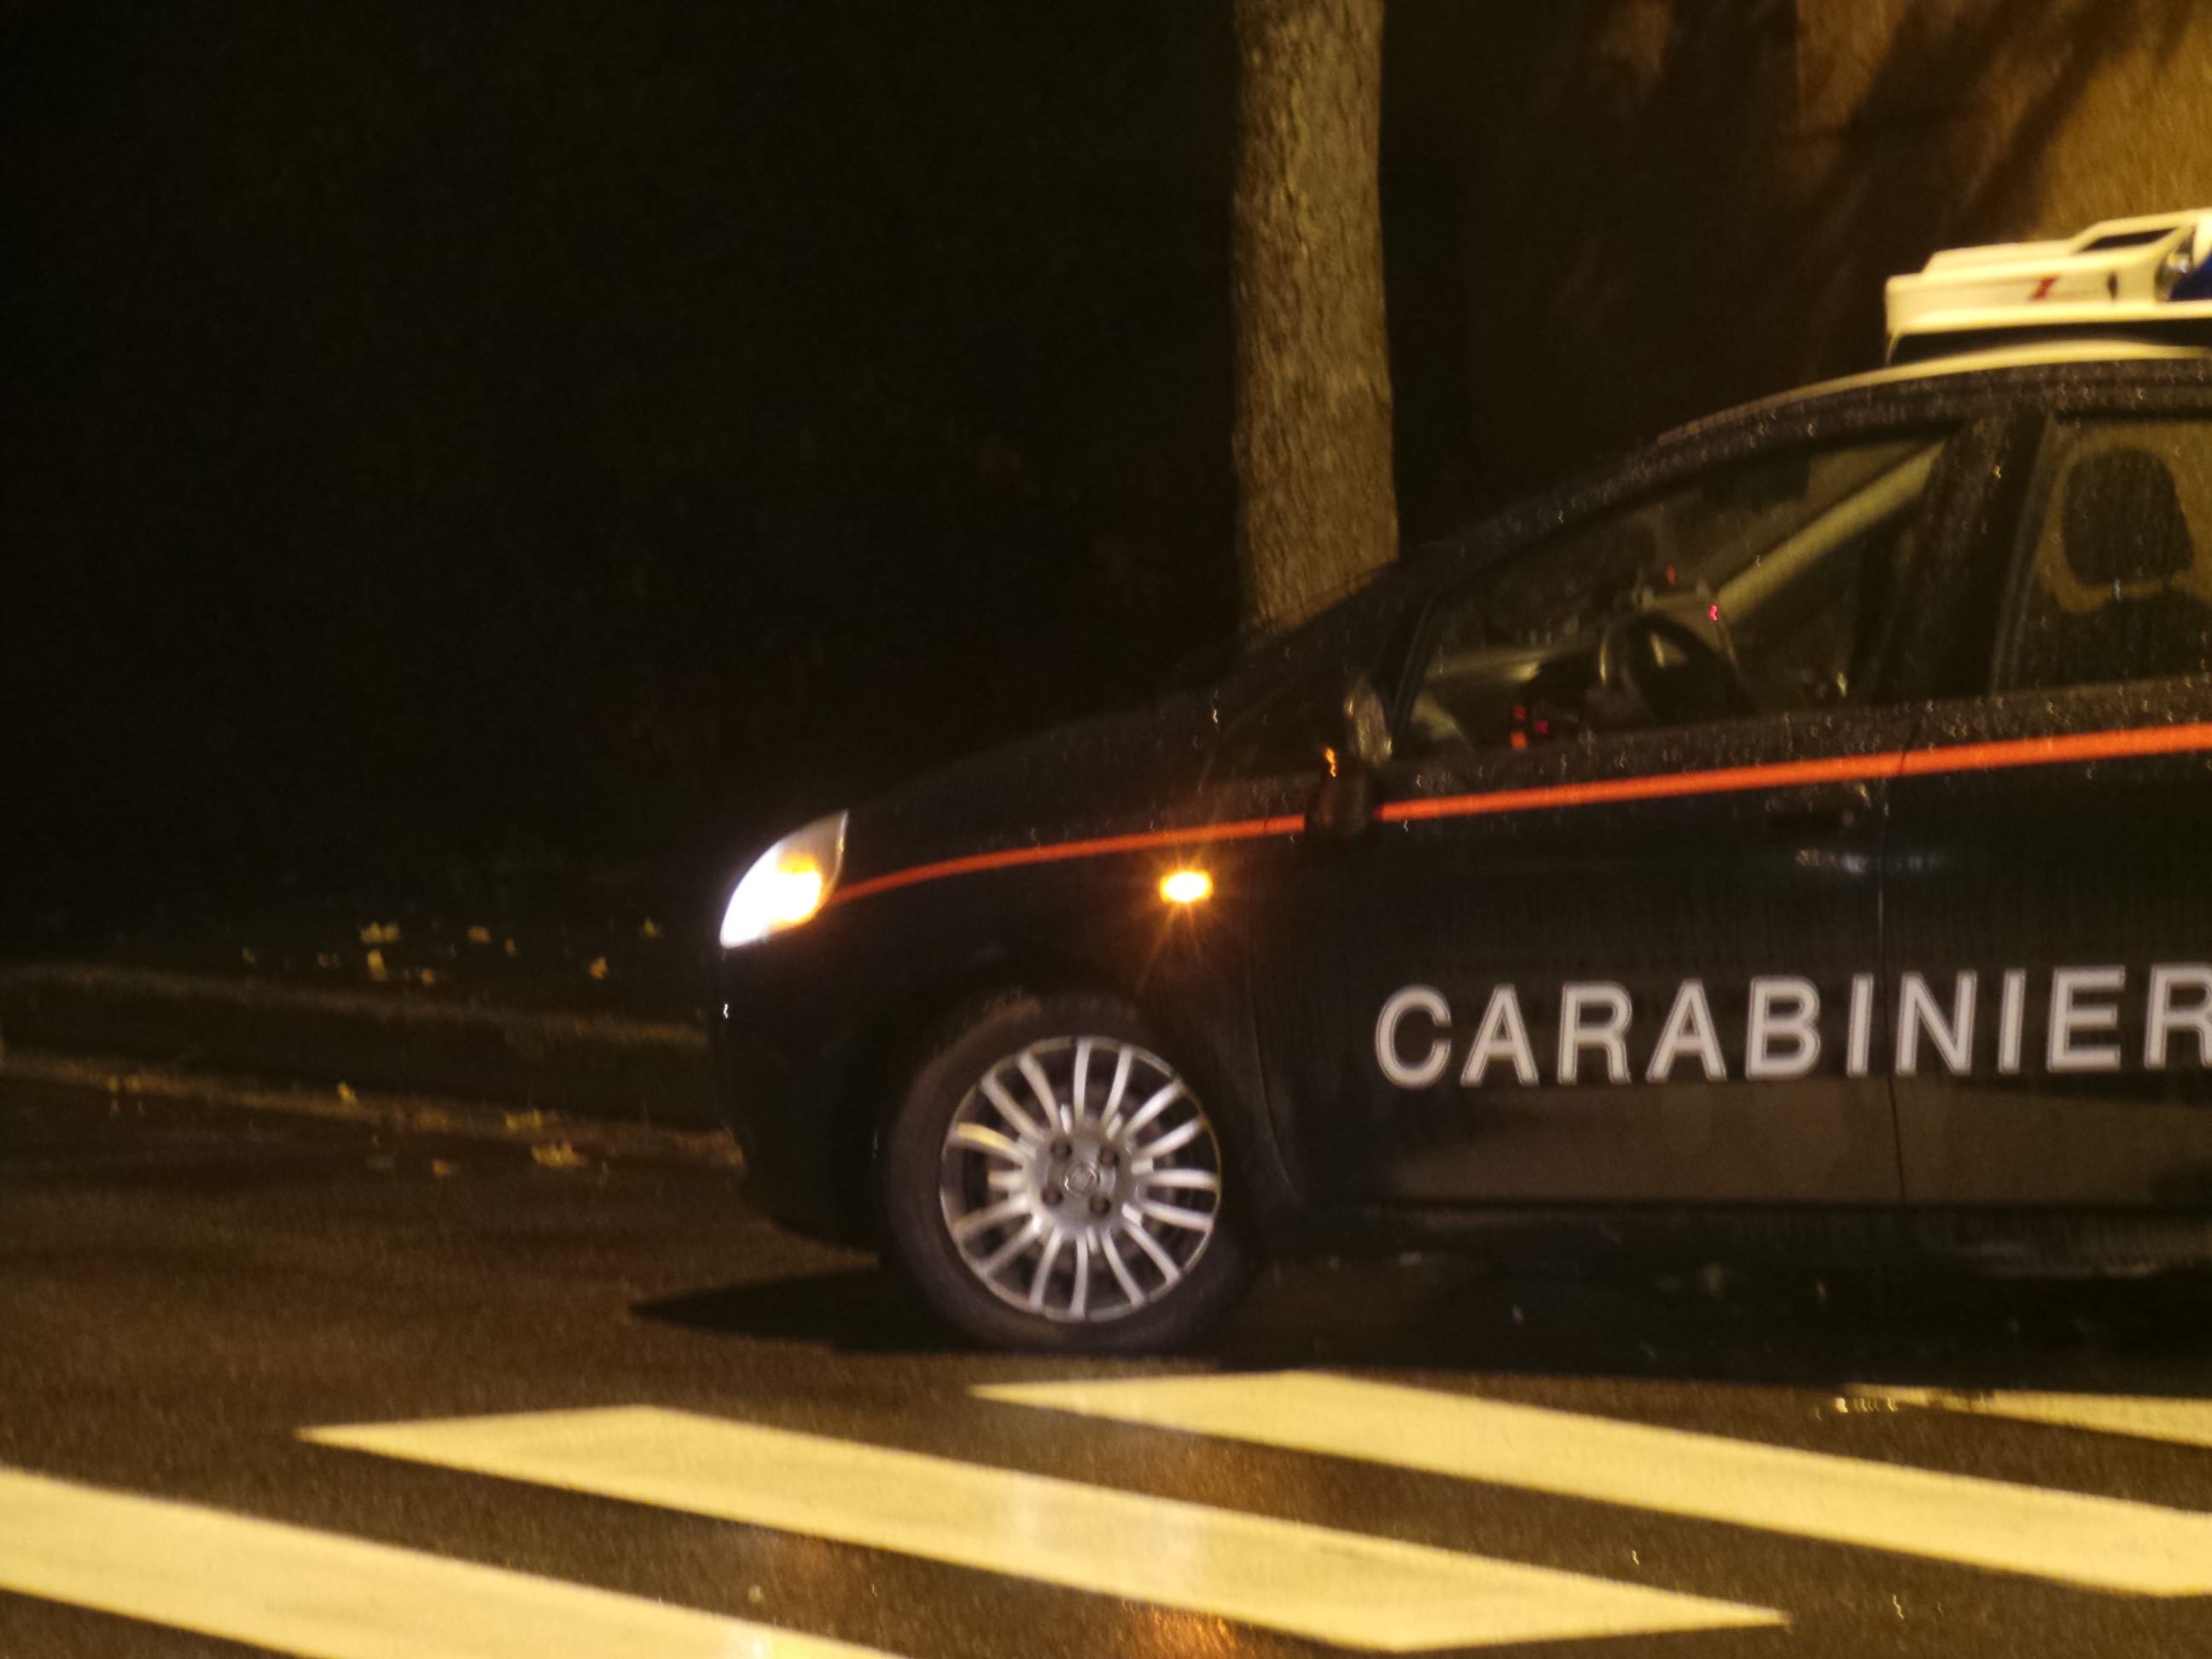 Auto in mezzo alla strada nel cuore della notte. Carabinieri chiariscono il mistero